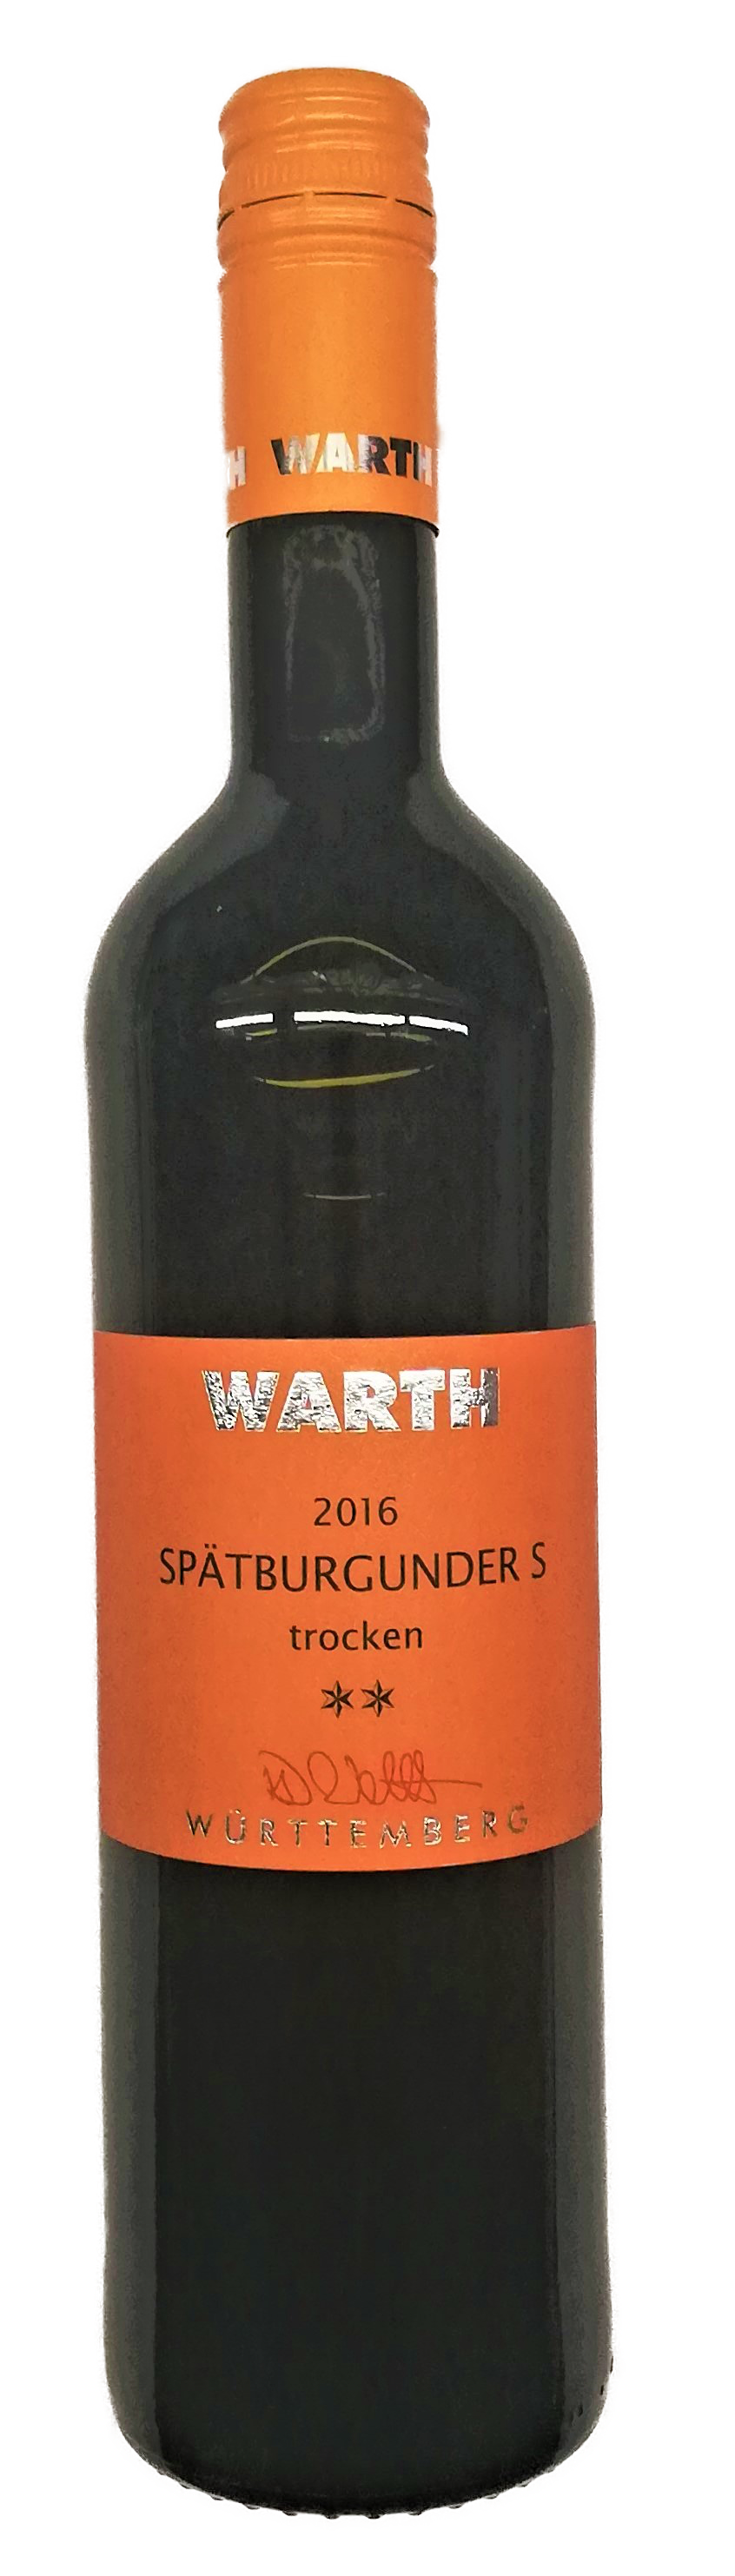 2017 Spätburgunder S trocken ** 0,75 L - Weingut WARTH